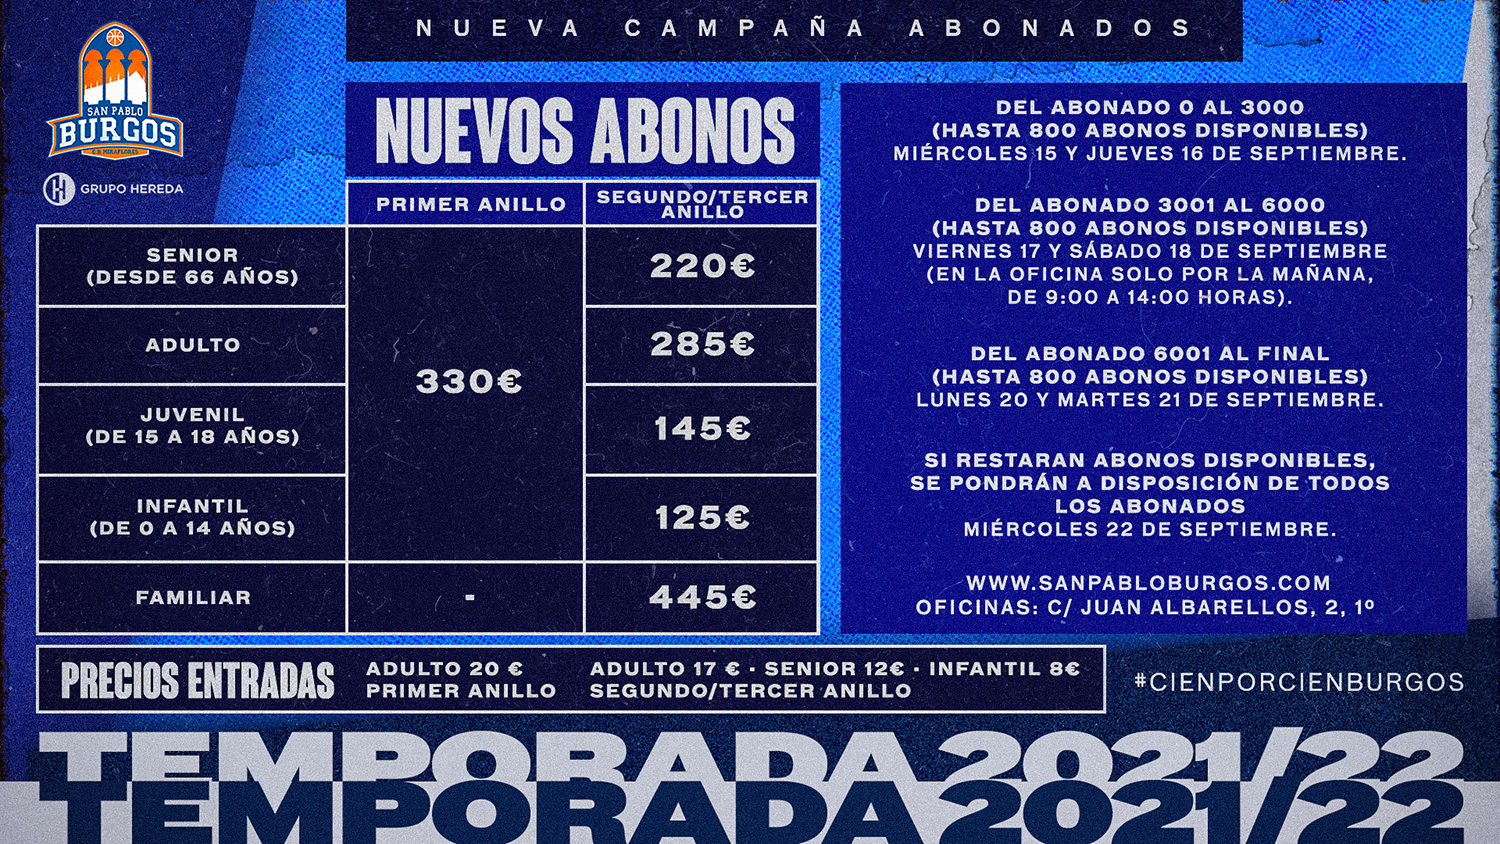 Campaña de abonados - Hereda San Pablo Burgos 2021-22